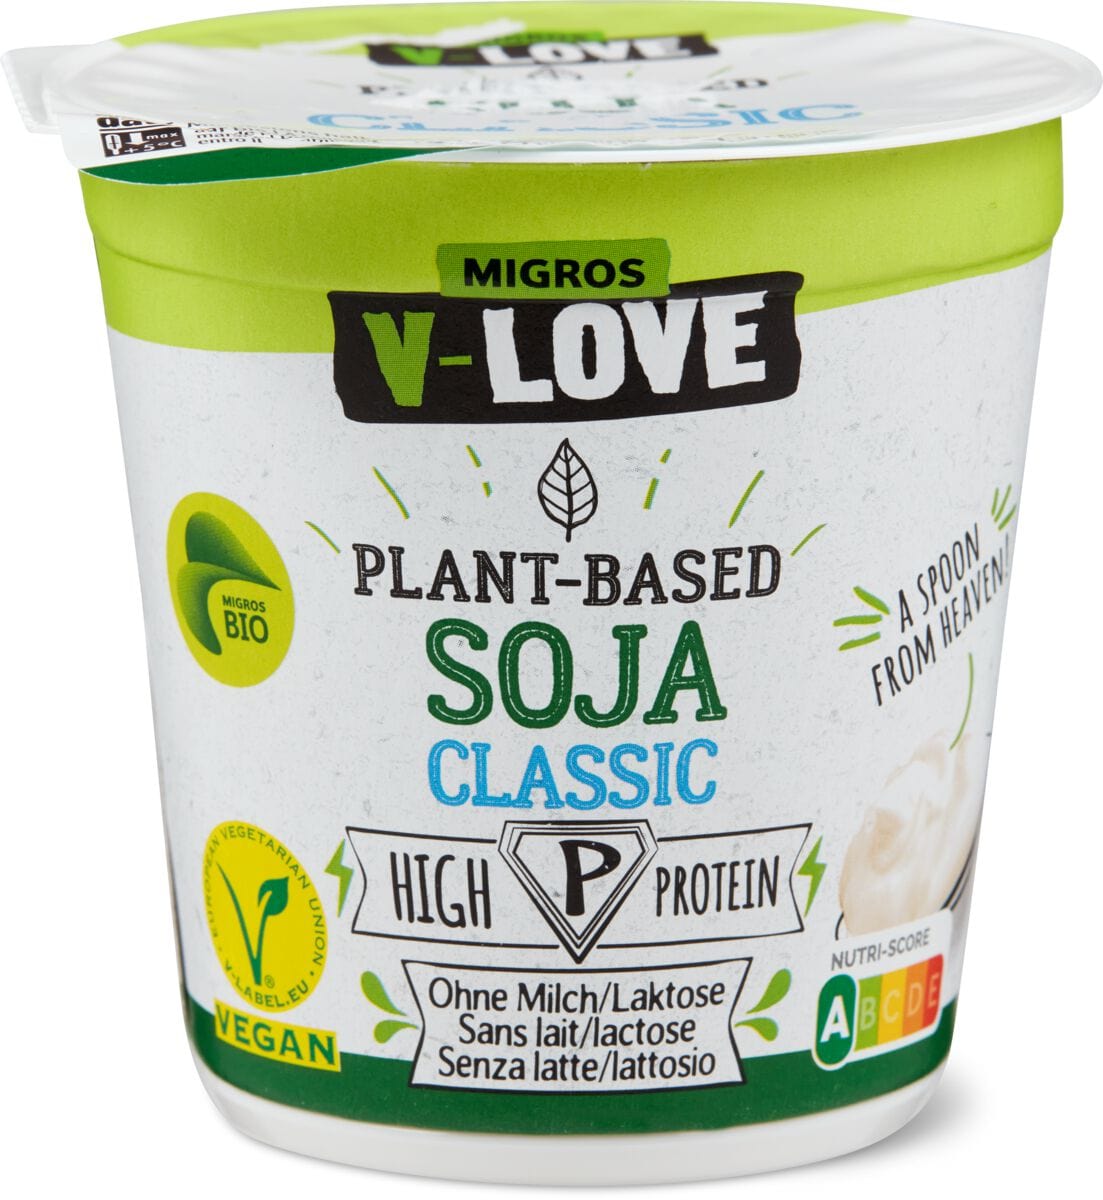 Bio V-Love Vegurt Soja Classic